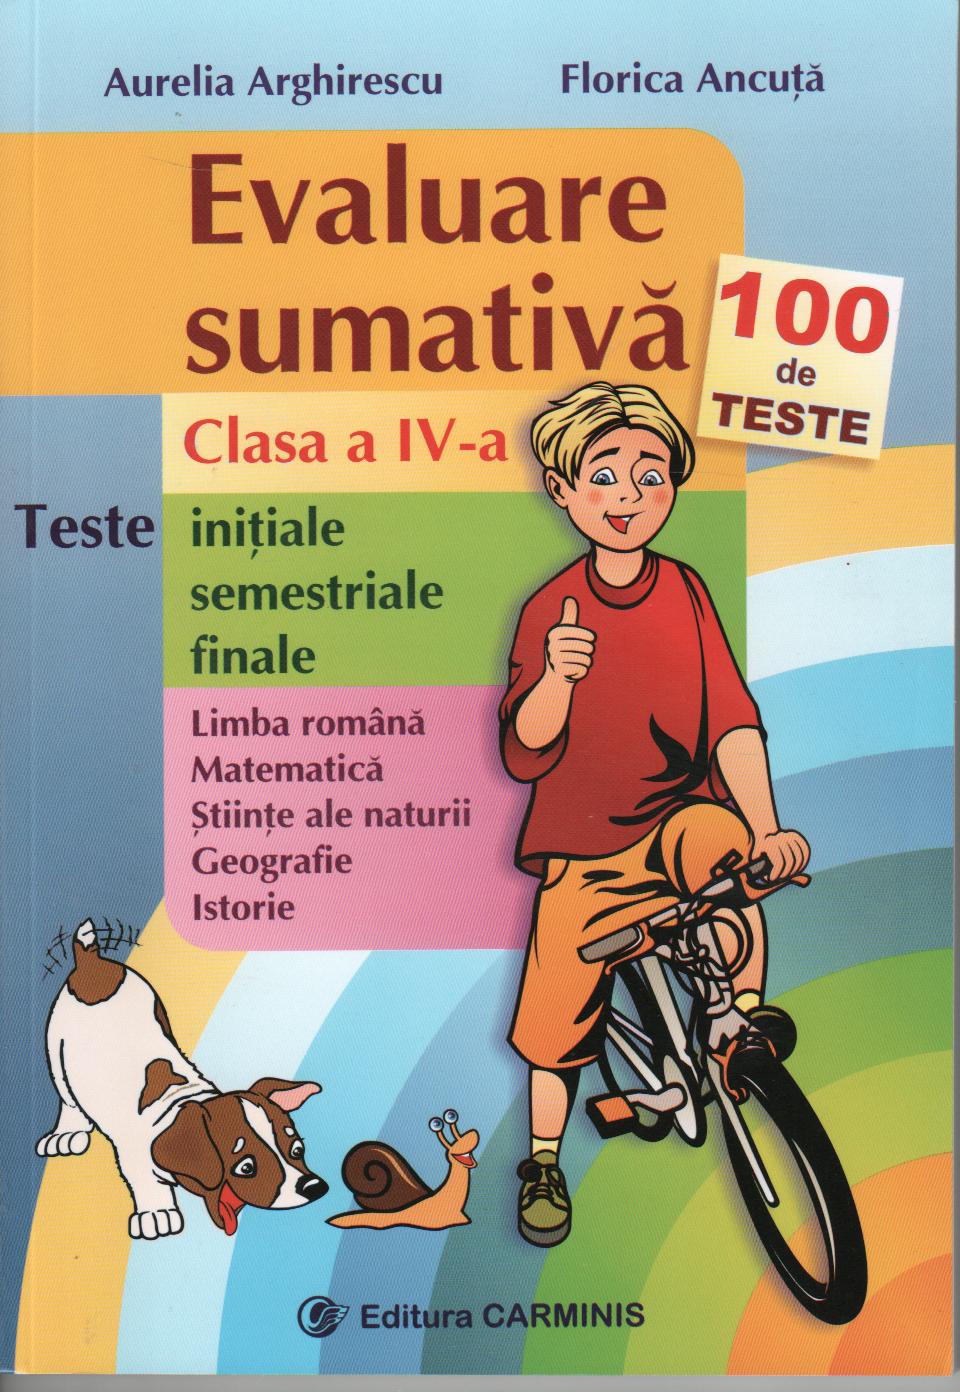 Evaluare sumativa - Clasa a 4-a - 100 de teste - Aurelia Arghirescu, Florica Ancuta